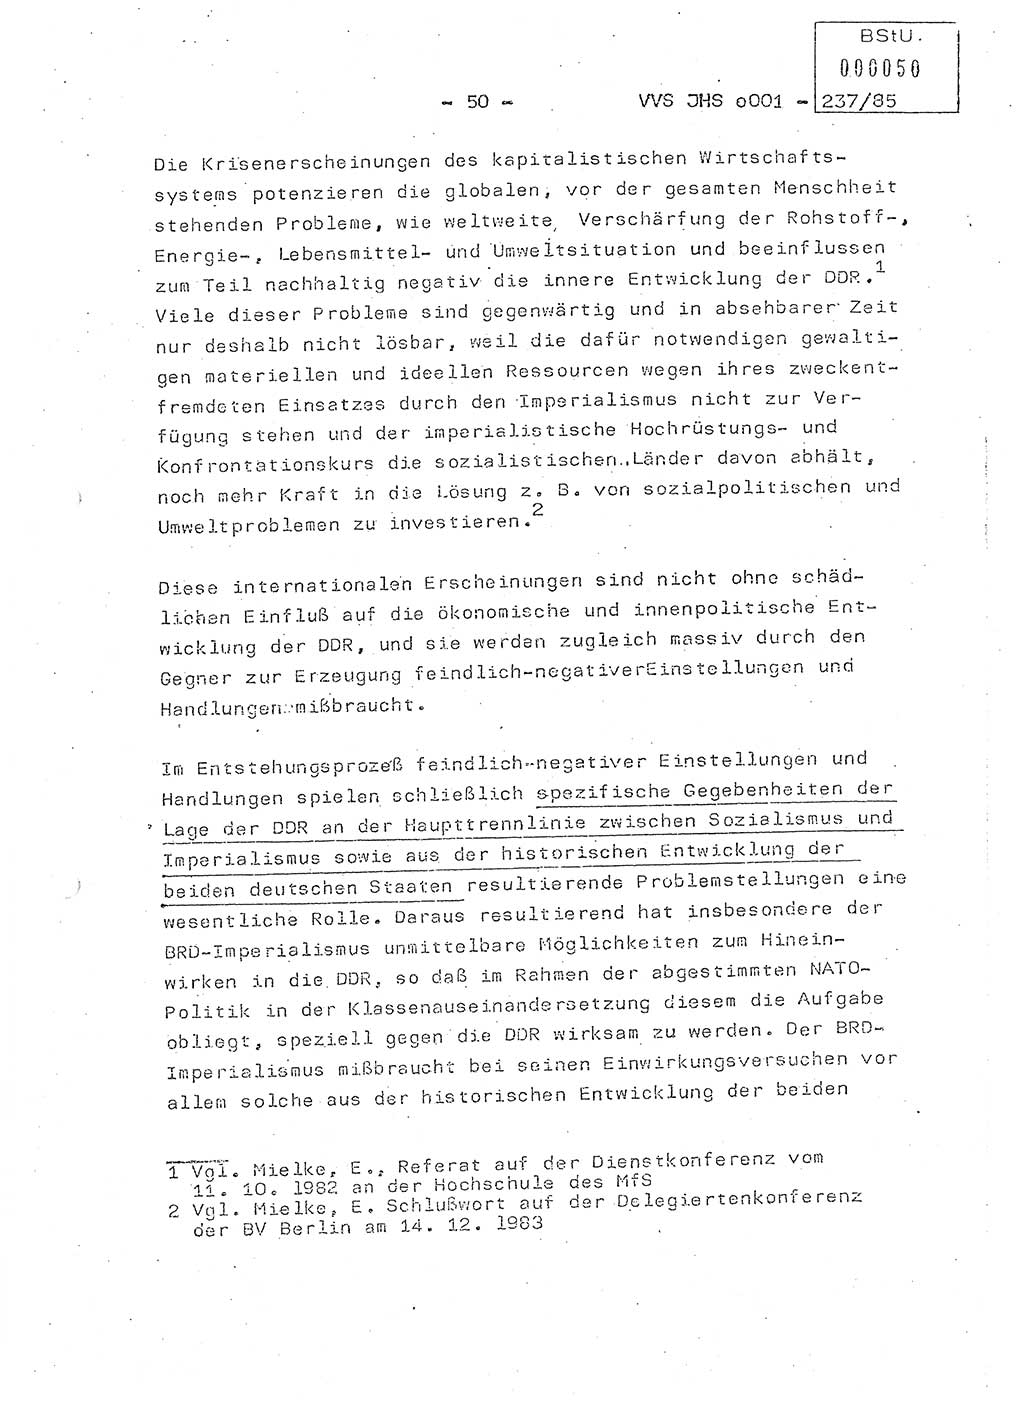 Dissertation Oberstleutnant Peter Jakulski (JHS), Oberstleutnat Christian Rudolph (HA Ⅸ), Major Horst Böttger (ZMD), Major Wolfgang Grüneberg (JHS), Major Albert Meutsch (JHS), Ministerium für Staatssicherheit (MfS) [Deutsche Demokratische Republik (DDR)], Juristische Hochschule (JHS), Vertrauliche Verschlußsache (VVS) o001-237/85, Potsdam 1985, Seite 50 (Diss. MfS DDR JHS VVS o001-237/85 1985, S. 50)